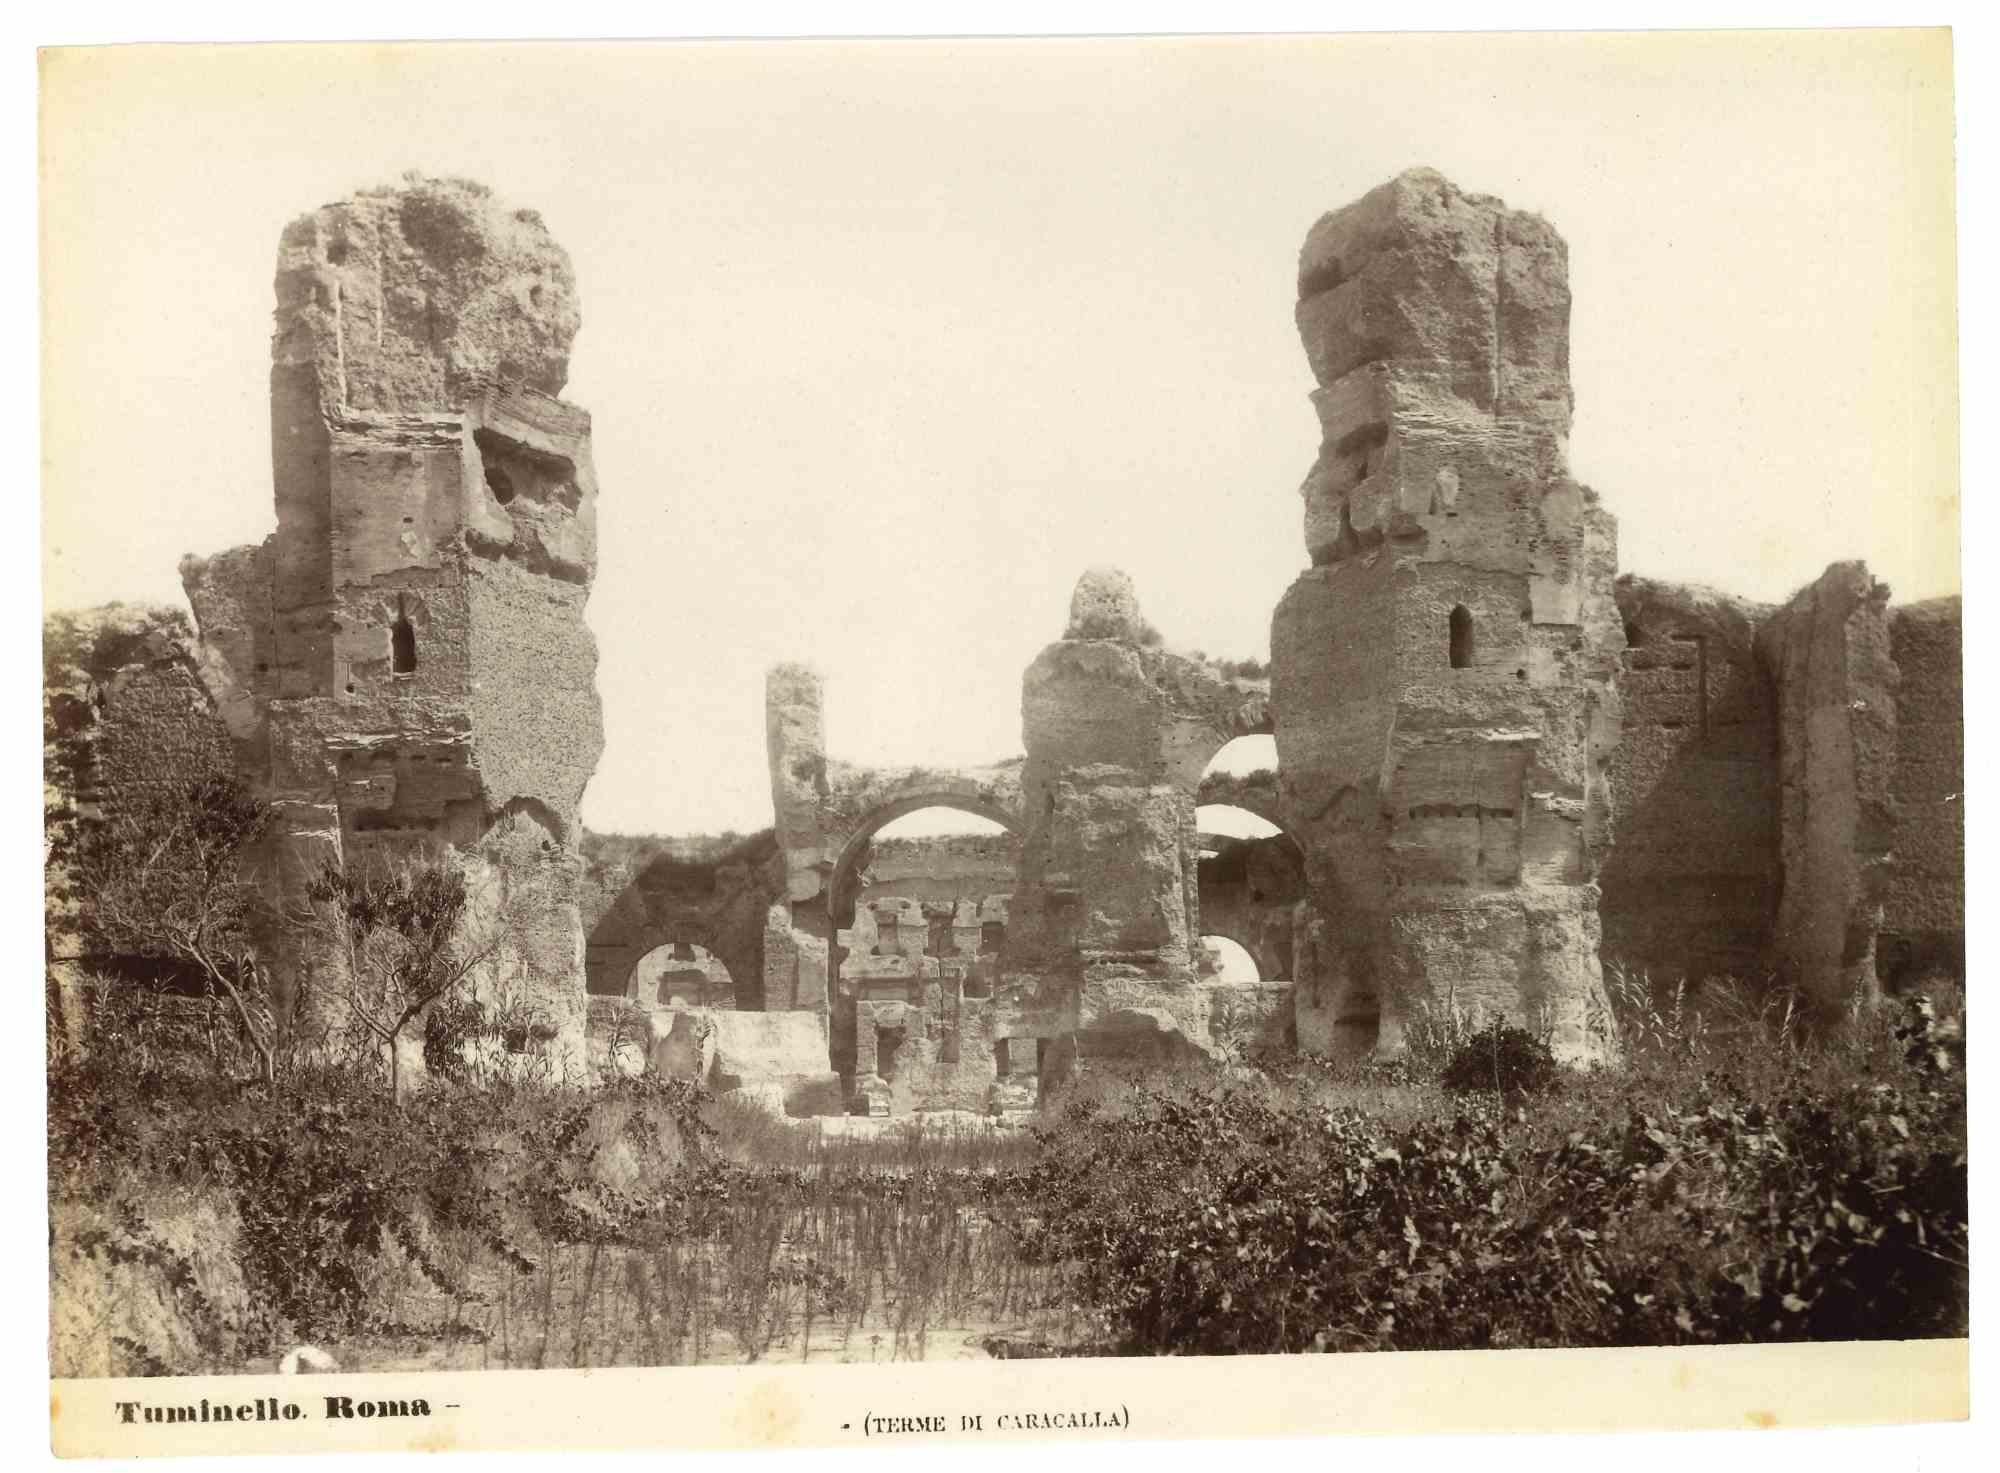 Baths of Caracalla – Vintage-Fotografie von L. Tuminello – frühes 20. Jahrhundert